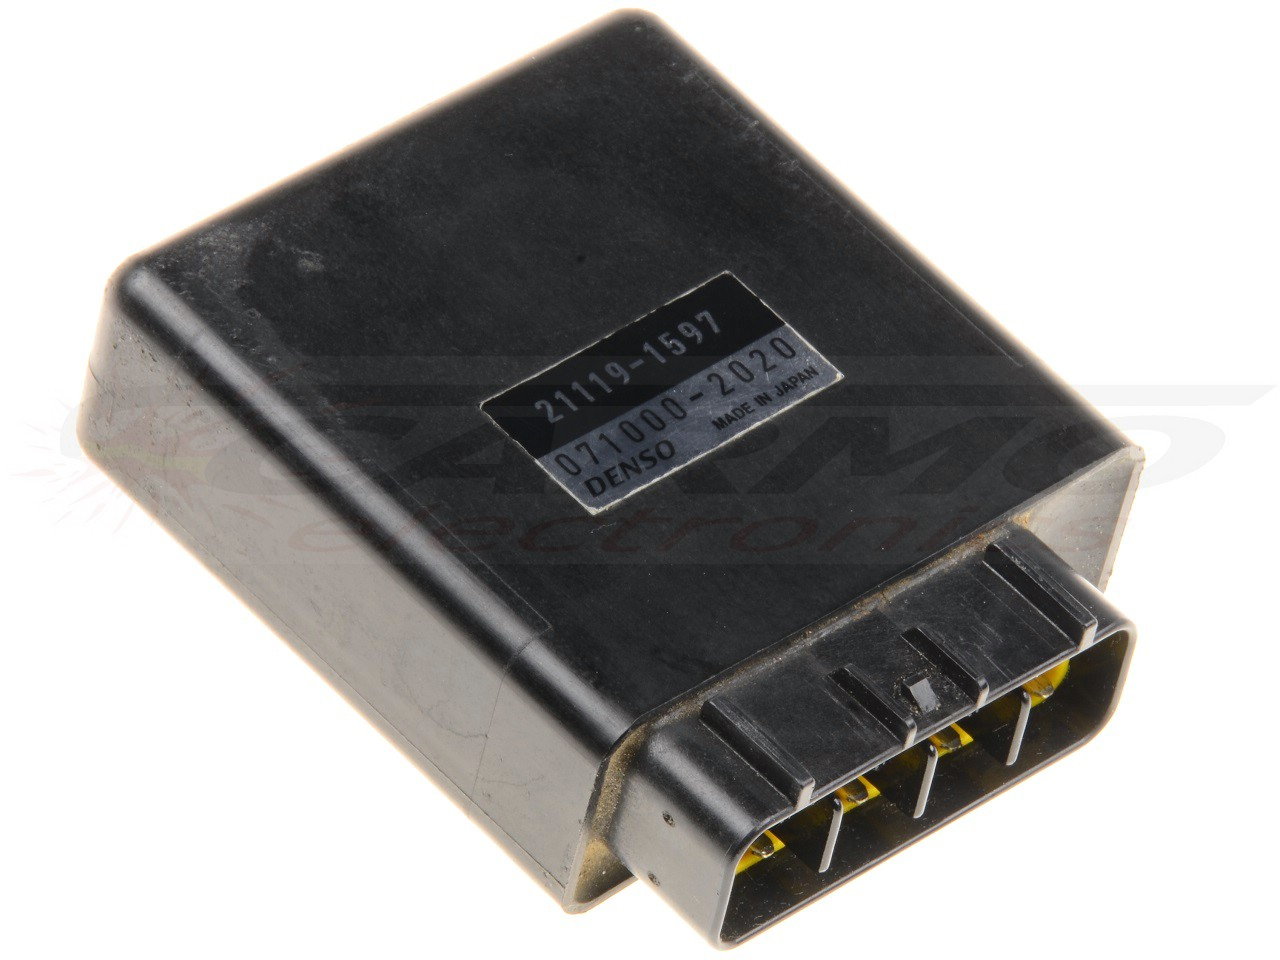 KX125 CDI controller (21119-1597, 21119-1574, Denso)